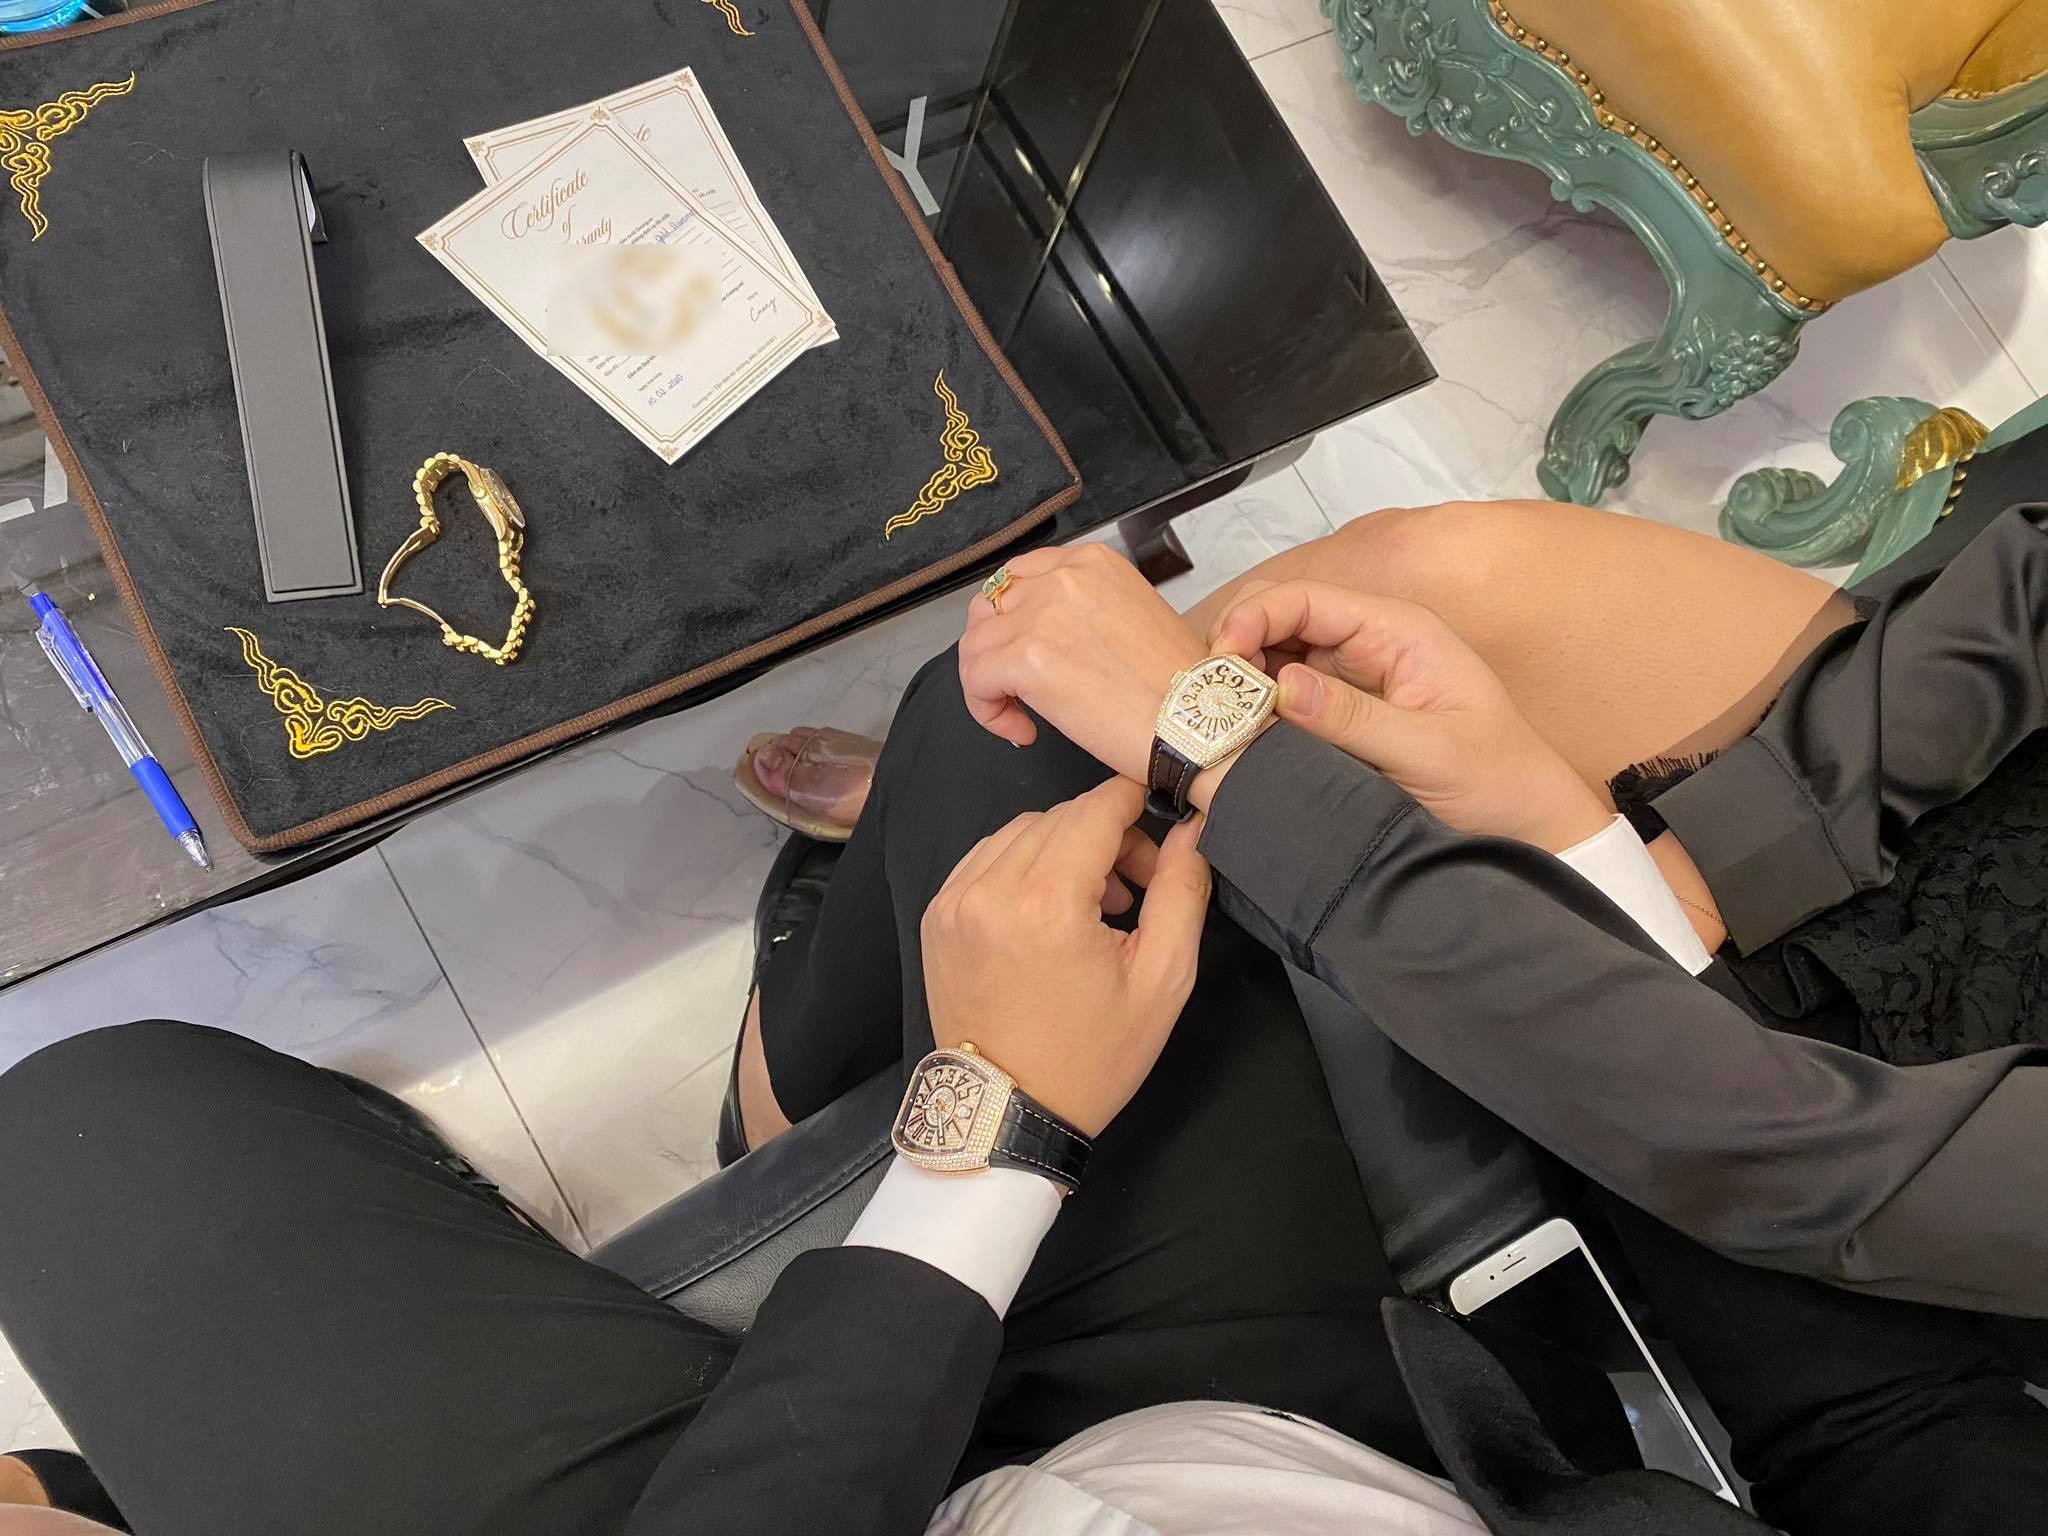 Đại gia mua đồng hồ dát kim cương hơn 1 tỷ đồng tặng bạn gái dịp Valentine